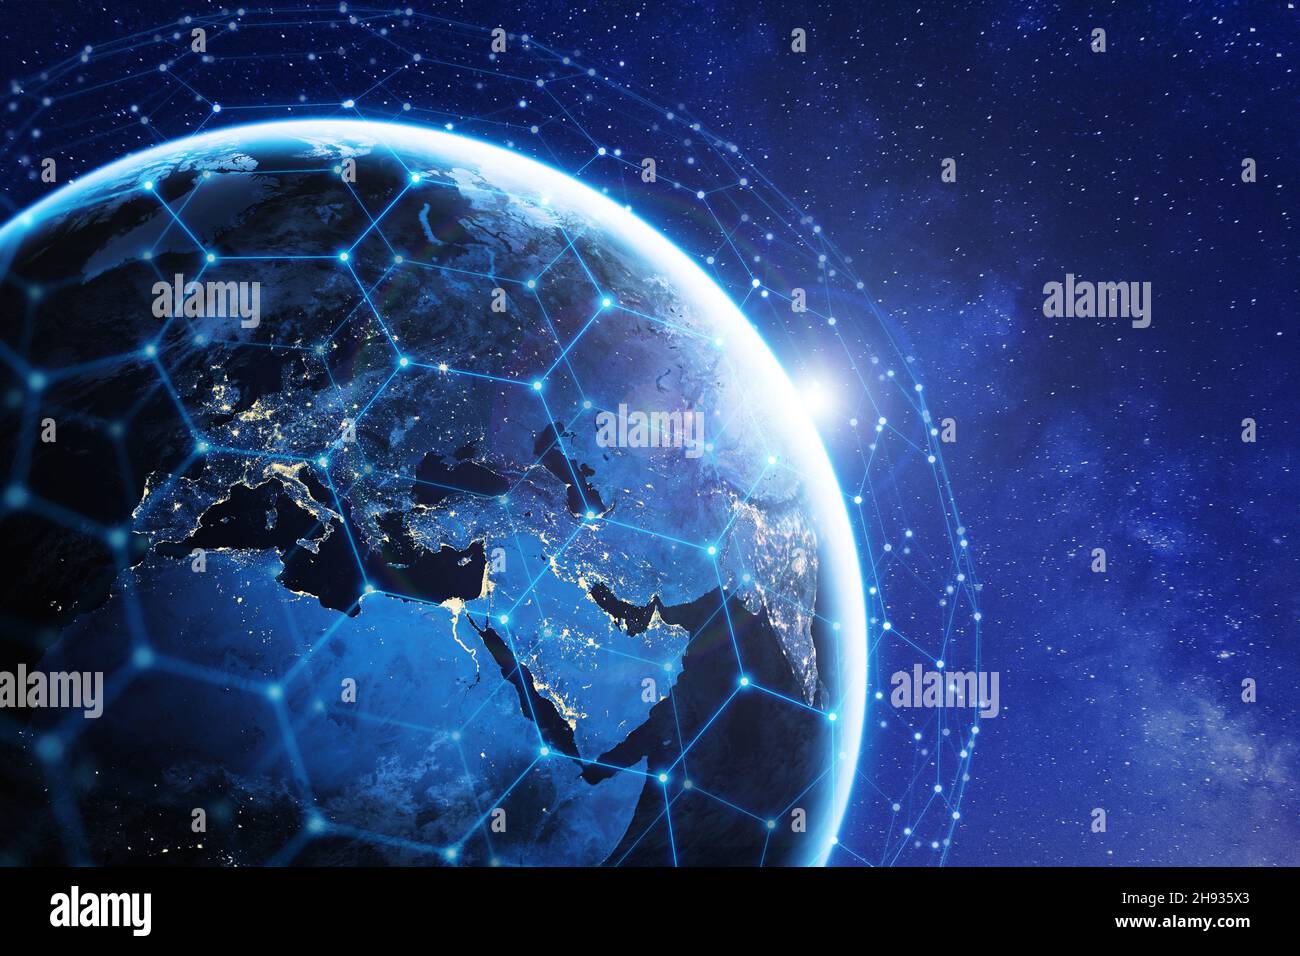 Kommunikationstechnologie mit weltweiten Netzwerken für Internet, 5G Mobilfunkdatenverbindung, Blockchain, IoT, Finanzen oder Smart Cities. Global Sat Stockfoto